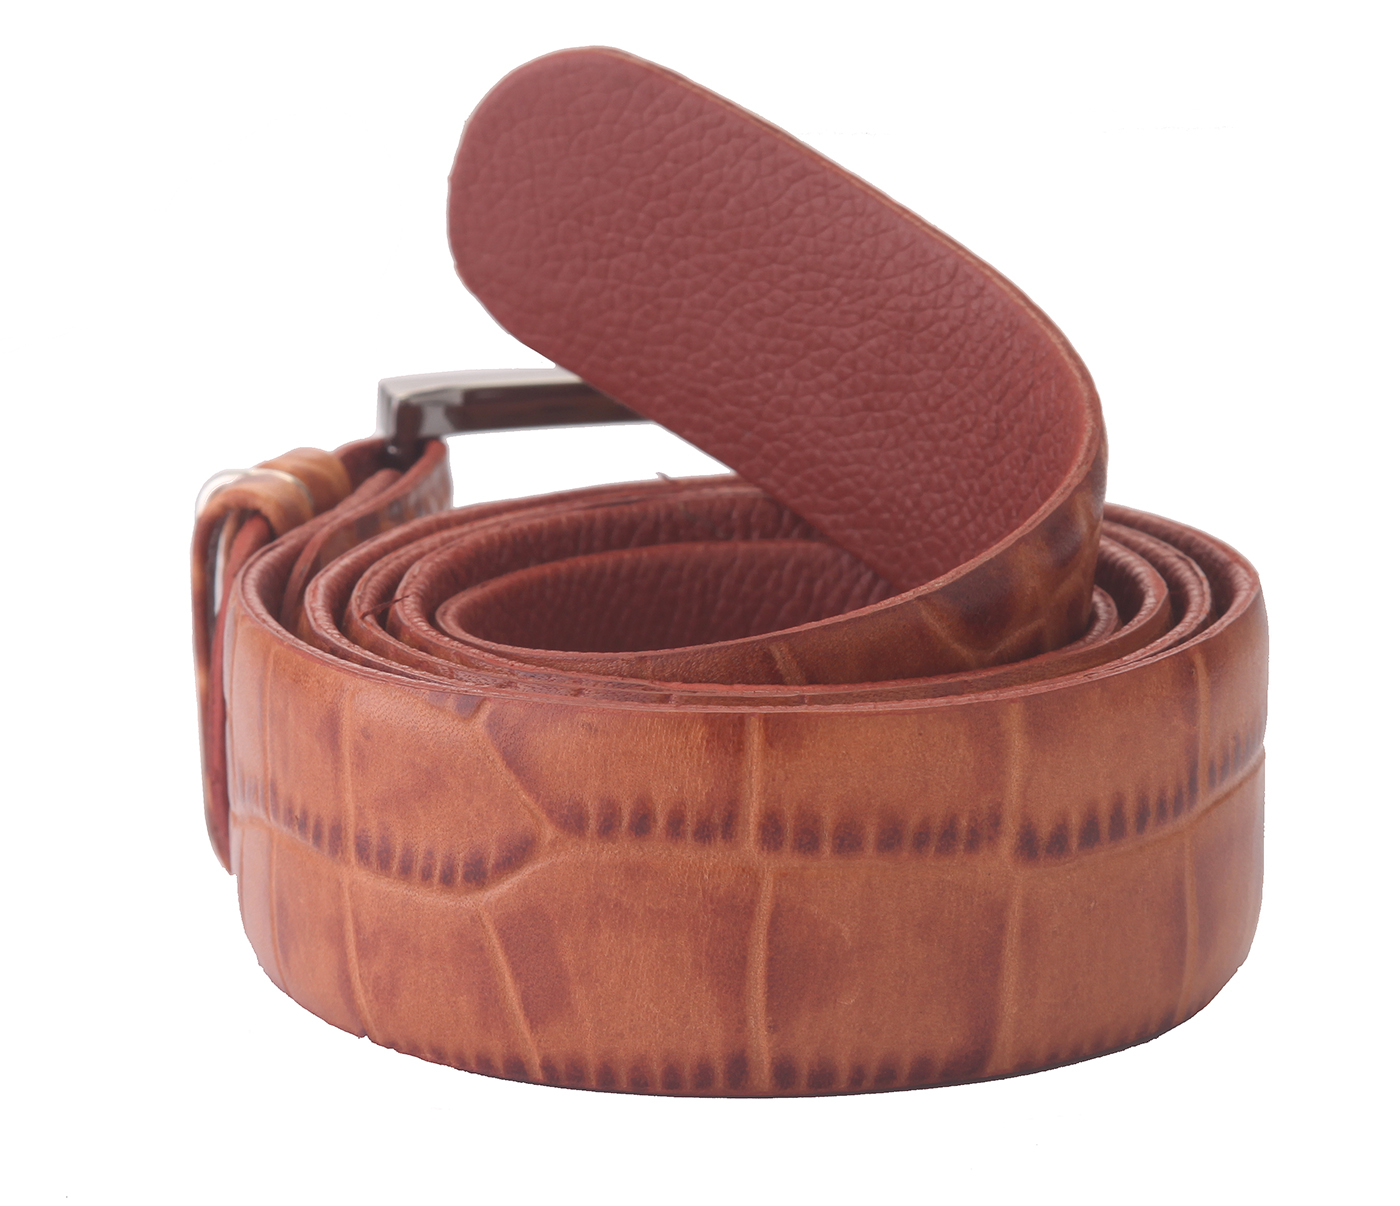 BL121--Men's Formal wear belt in Genuine Leather - Tan